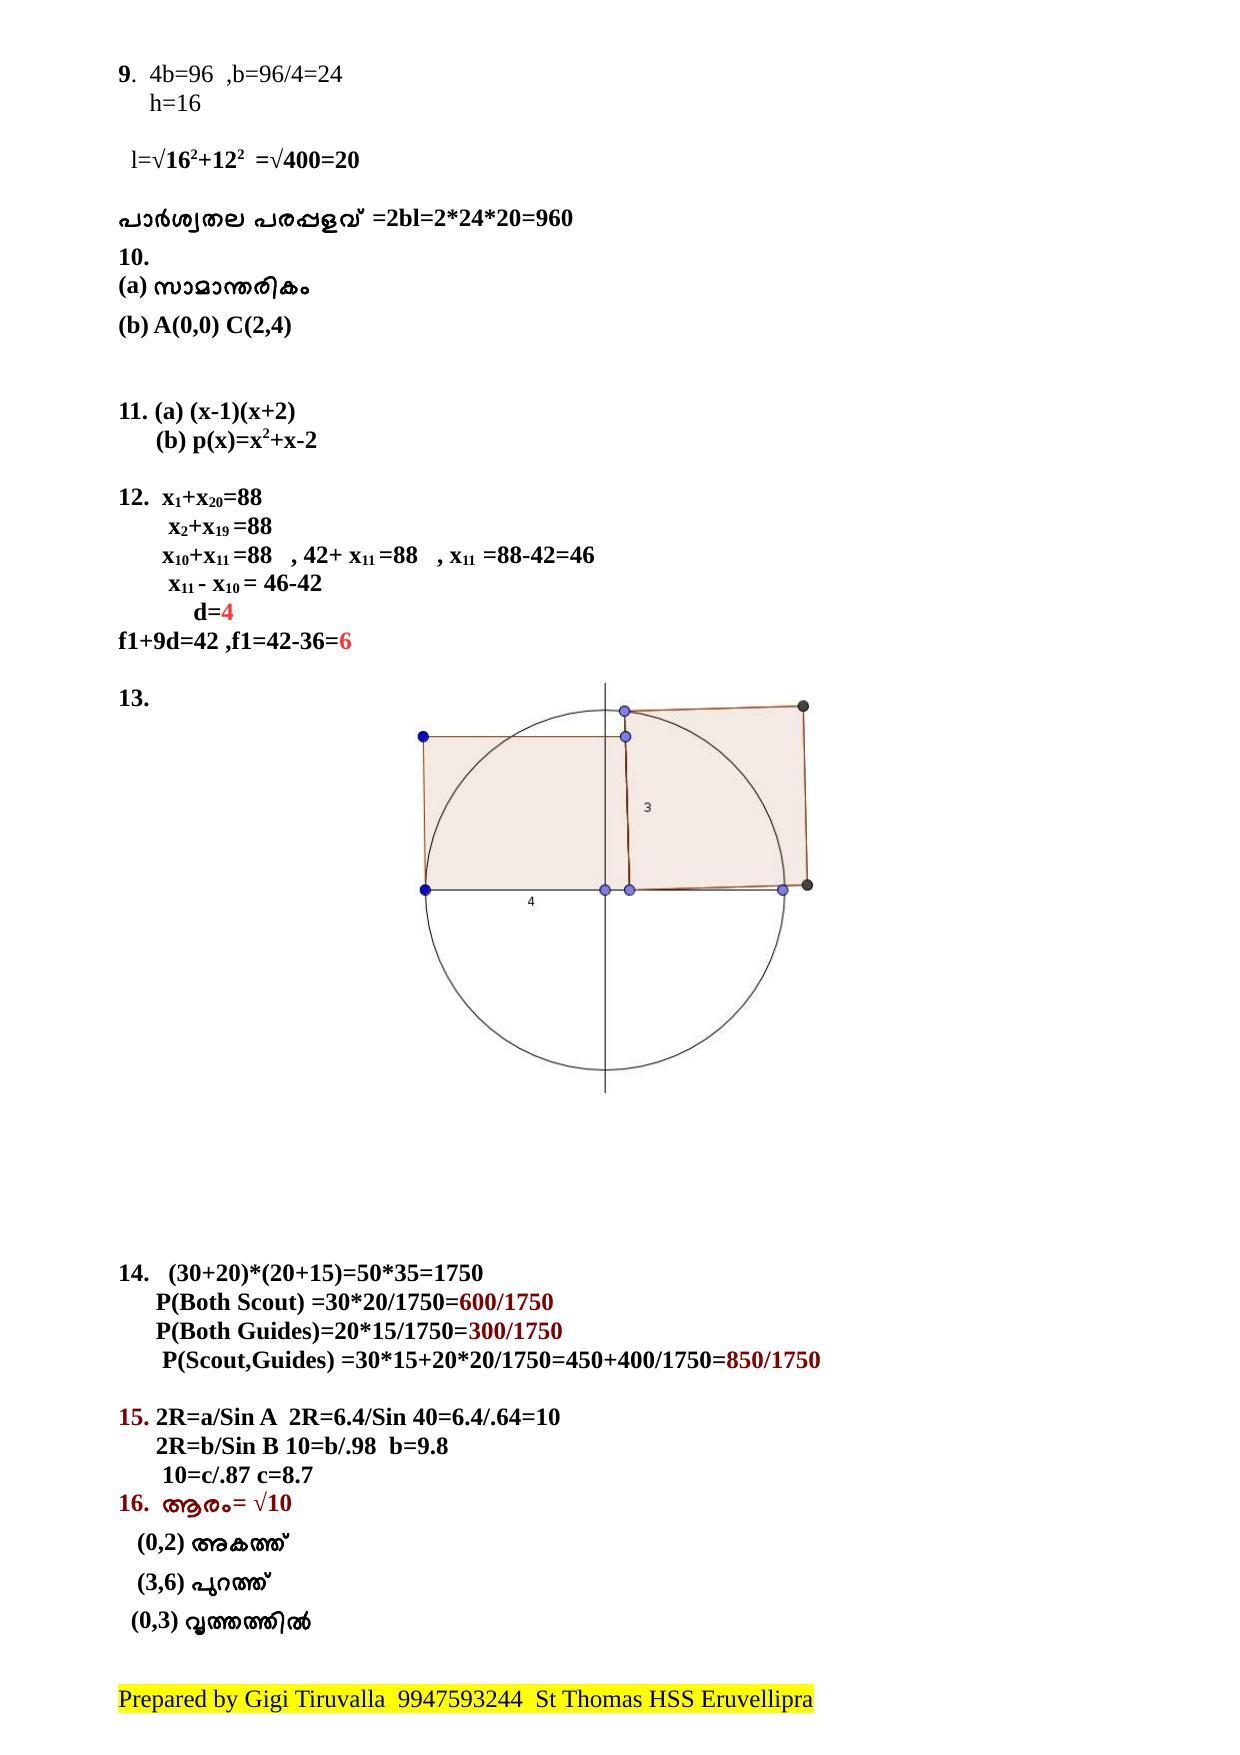 Kerala SSLC 2018 Maths Answer Key (MM) - Page 2